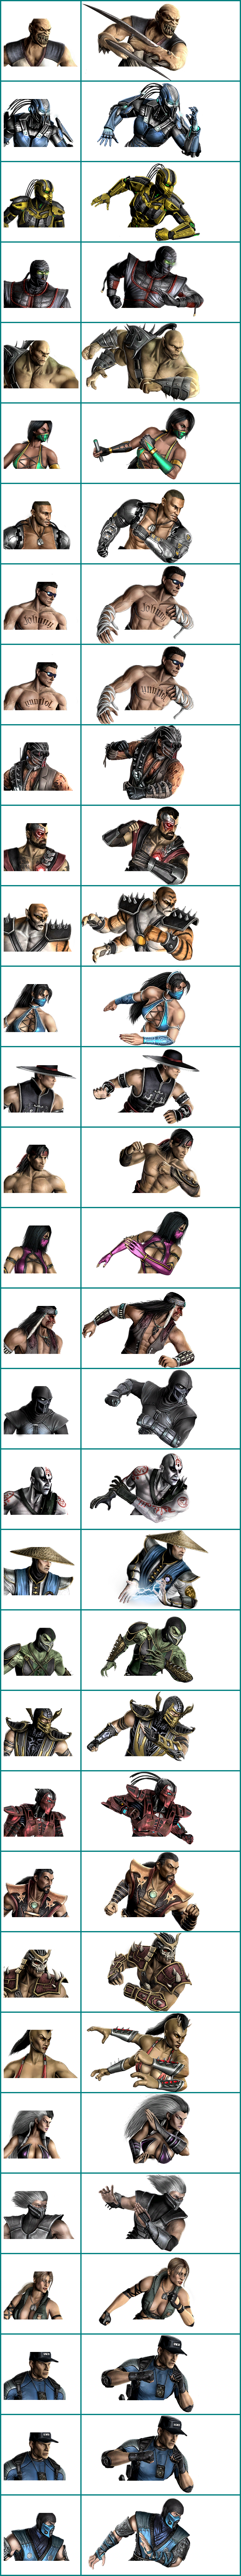 Mortal Kombat (2011) - Ladder Character Icons